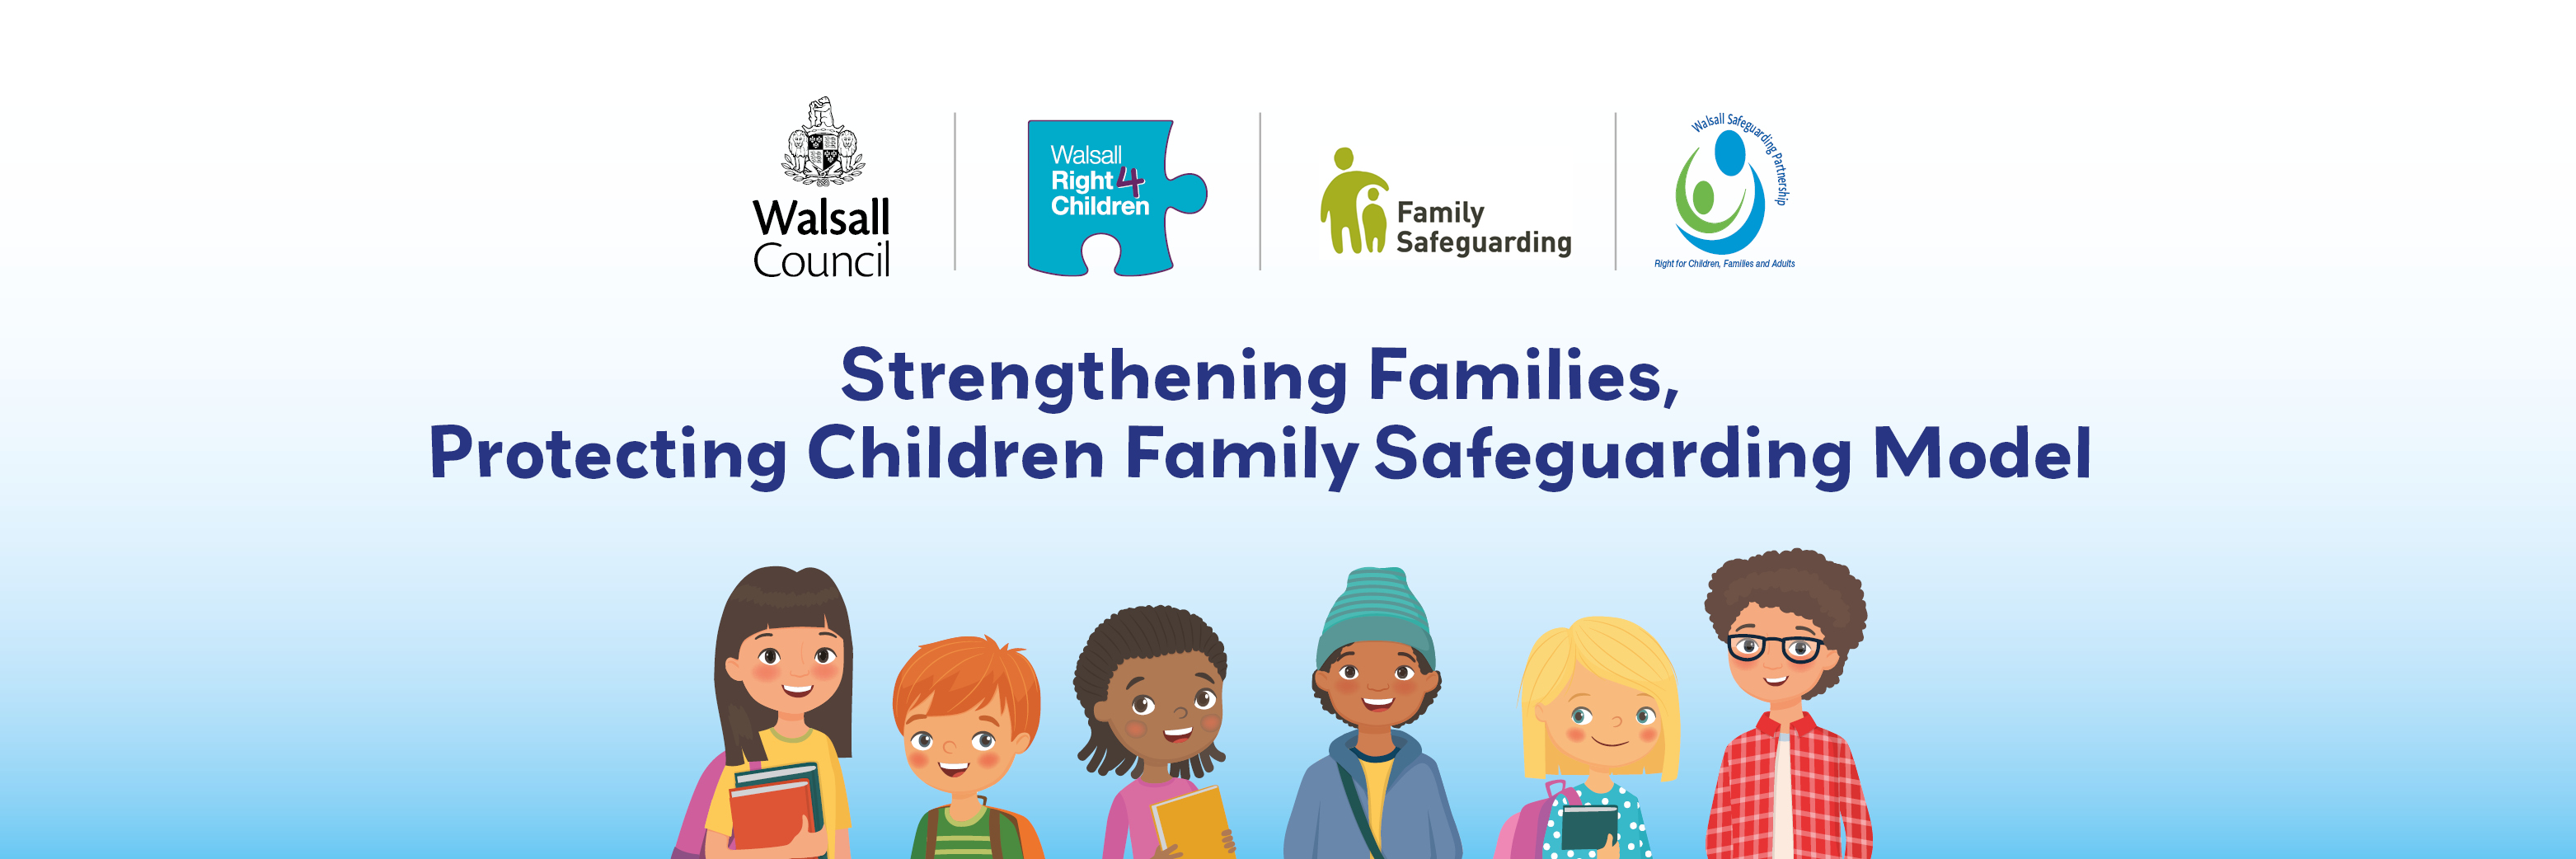 Walsall family safeguarding - Strengthening Families, protecting children family safeguarding model 